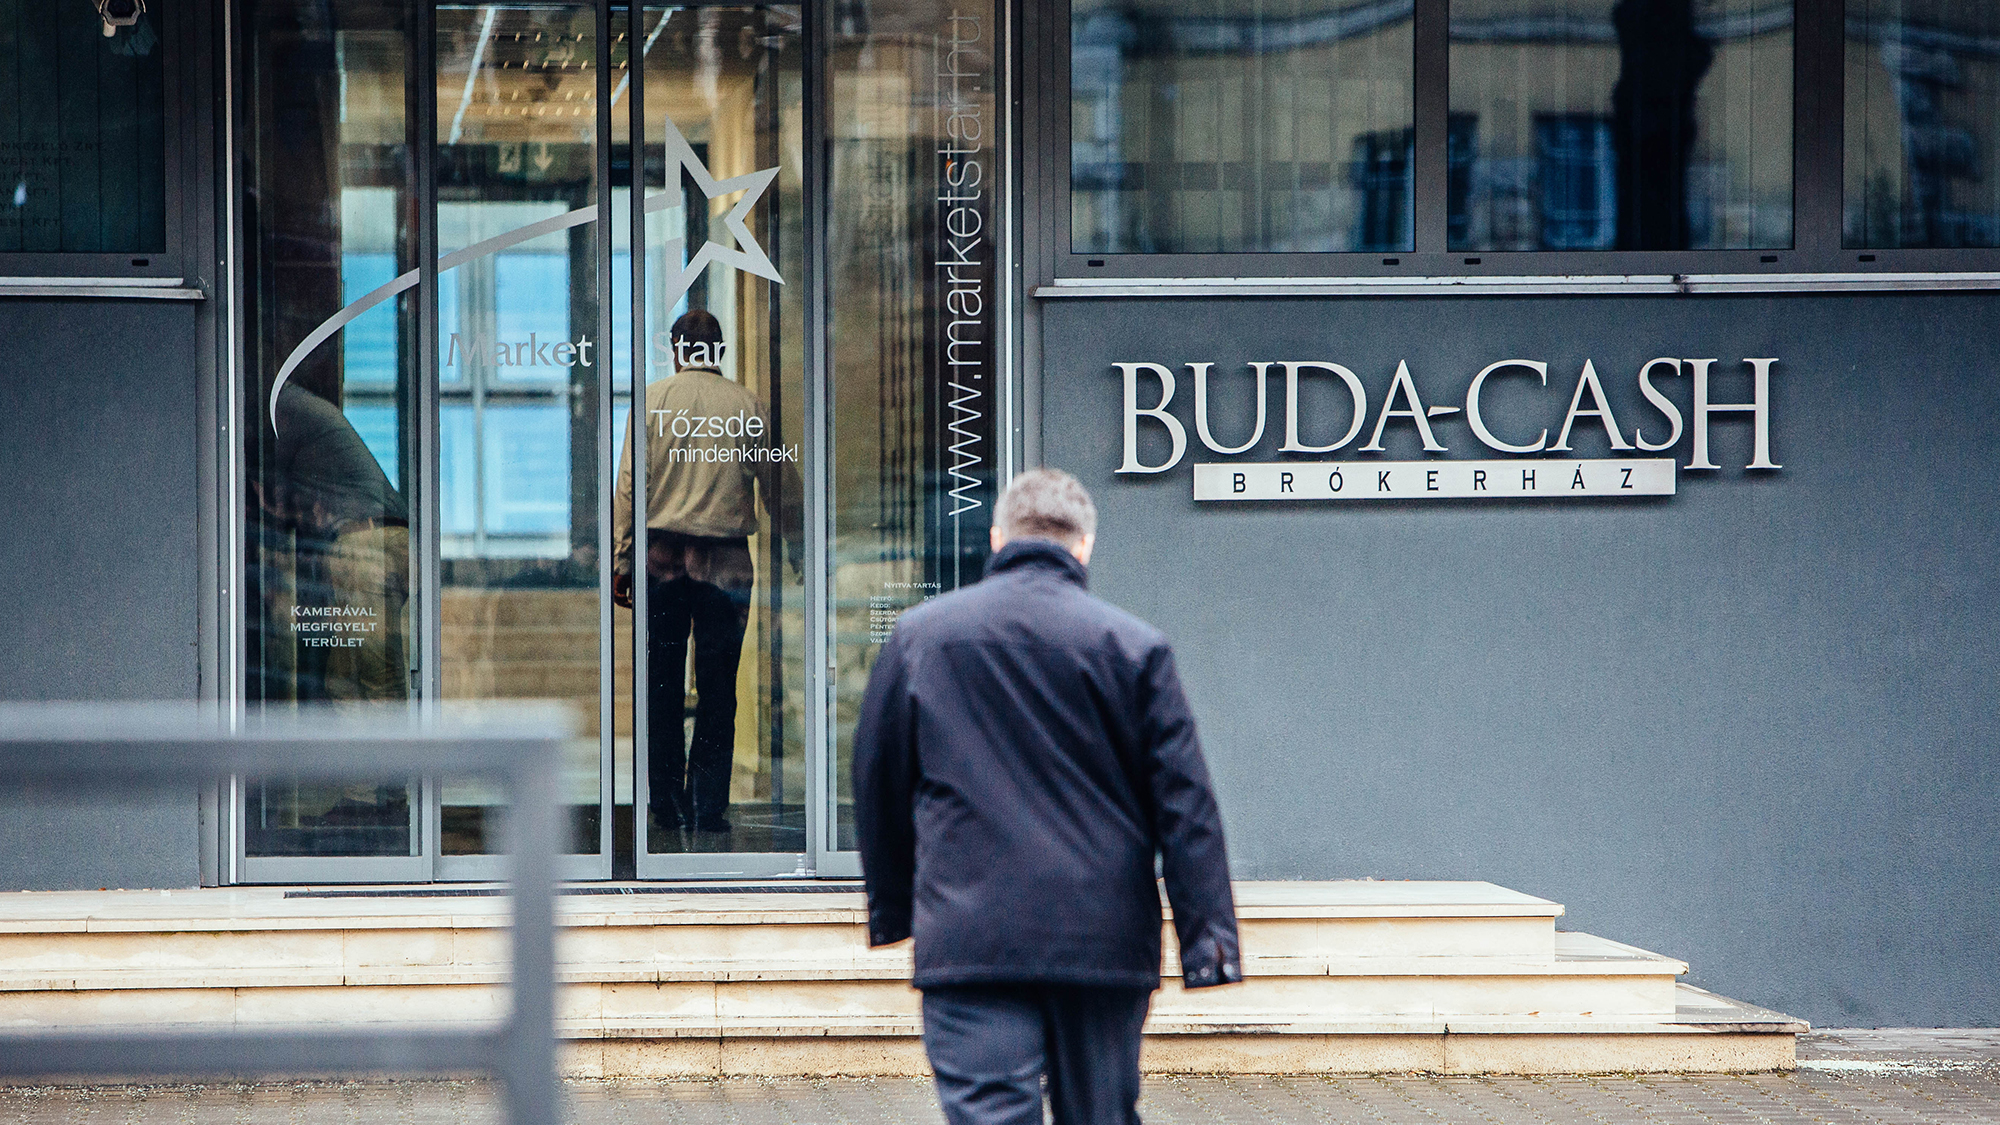 2,8 milliárd forint EU-s támogatás úszott el a Buda-Cash csődje miatt, a minisztérium hallgat az ügyről